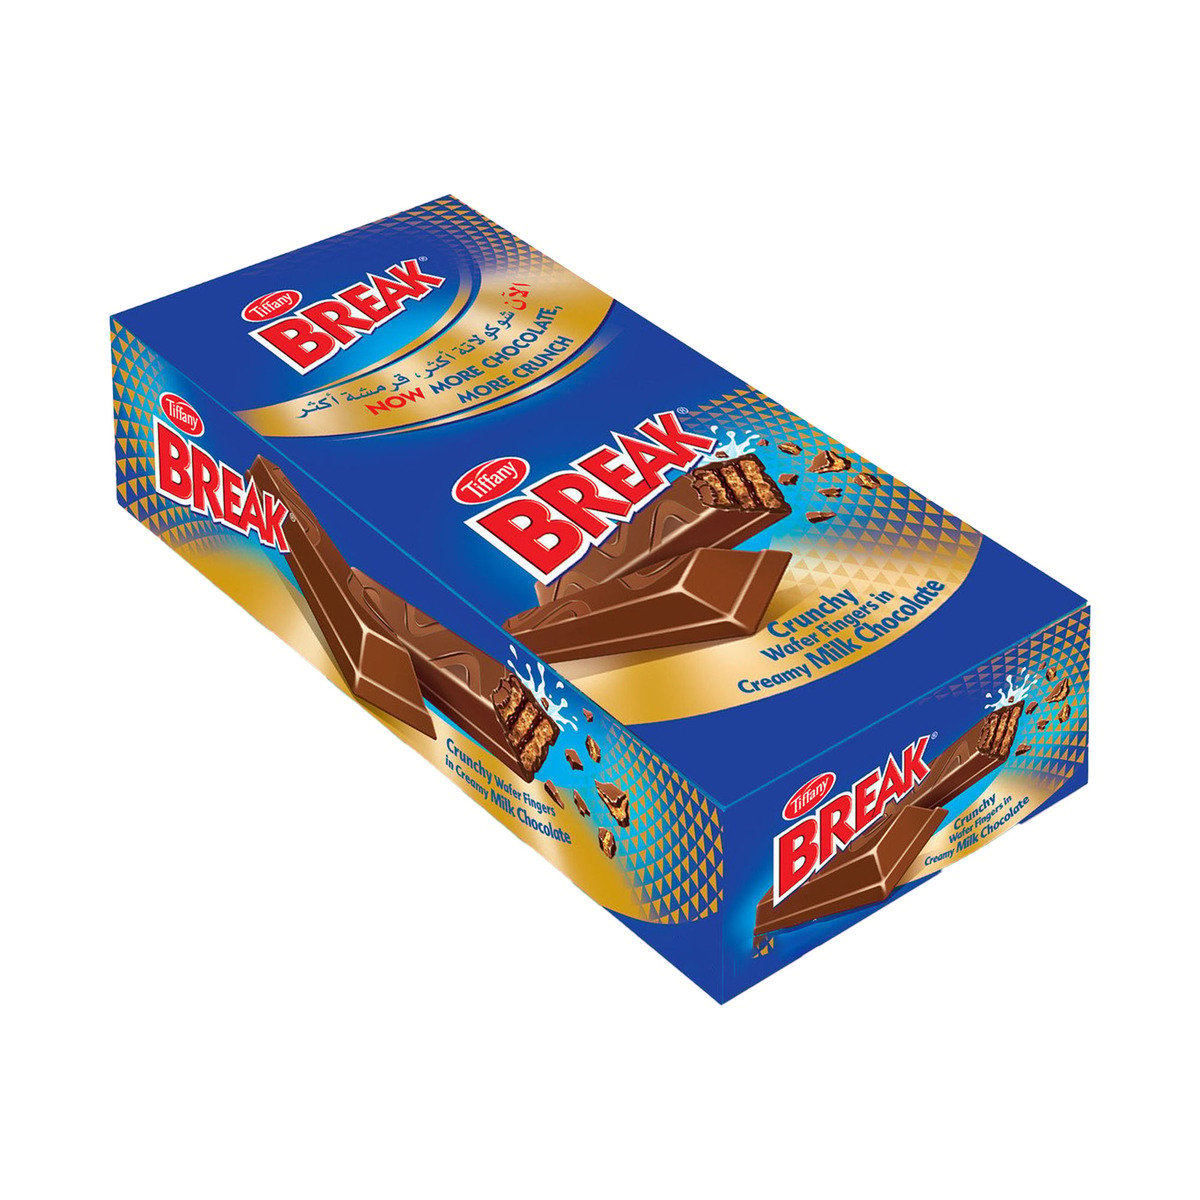 اشتري قم بشراء تيفاني بريك ويفر مقرمش 2 اصابع 15.5 جم × 24 حبة Online at Best Price من الموقع - من لولو هايبر ماركت Chocolate Bags في السعودية